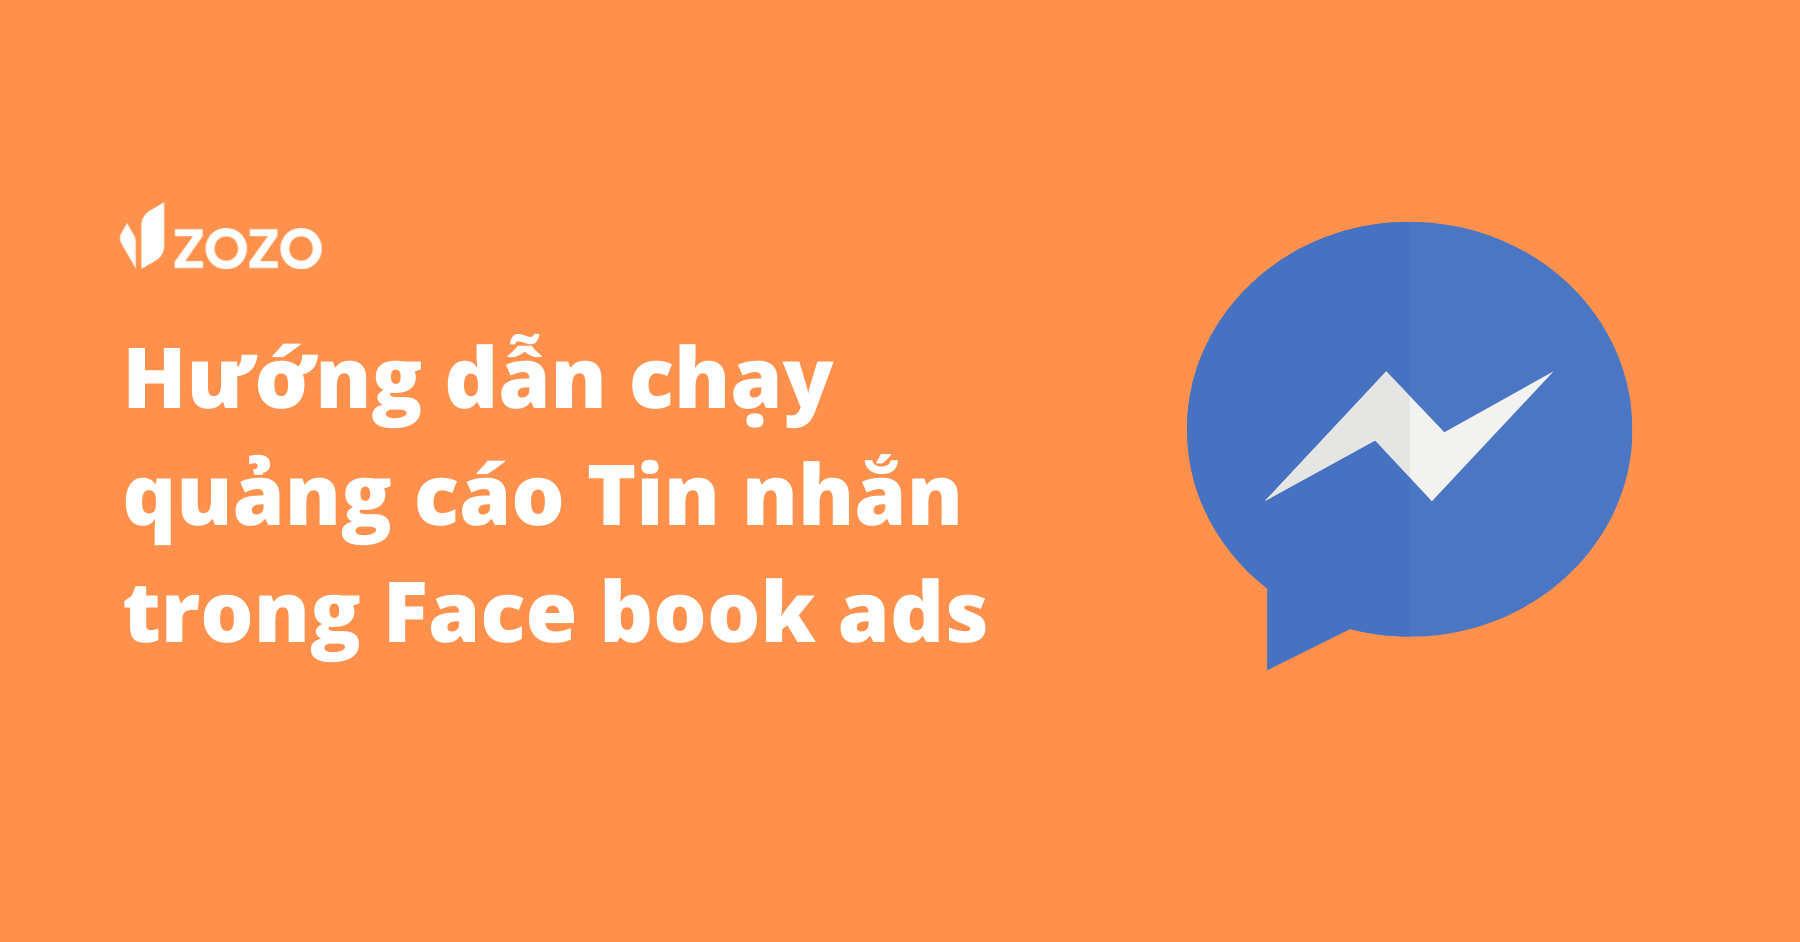 Hướng dẫn chạy quảng cáo tin nhắn trong Facebook ads